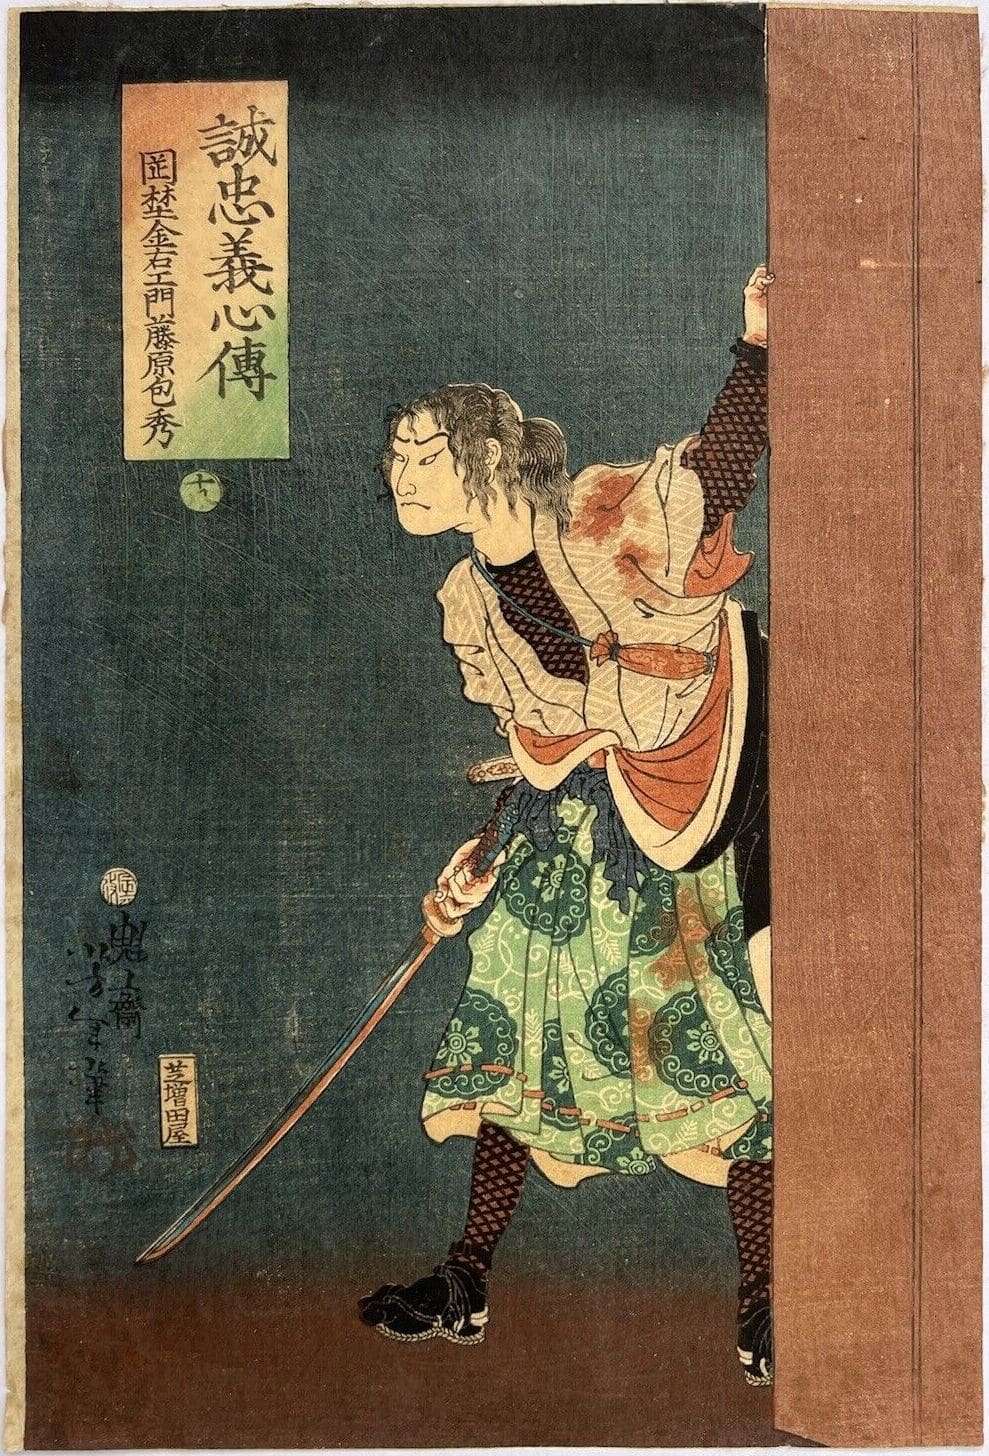 Okano Kinuemon Fujiwara no Kanehide by Tsukioka Yoshitoshi